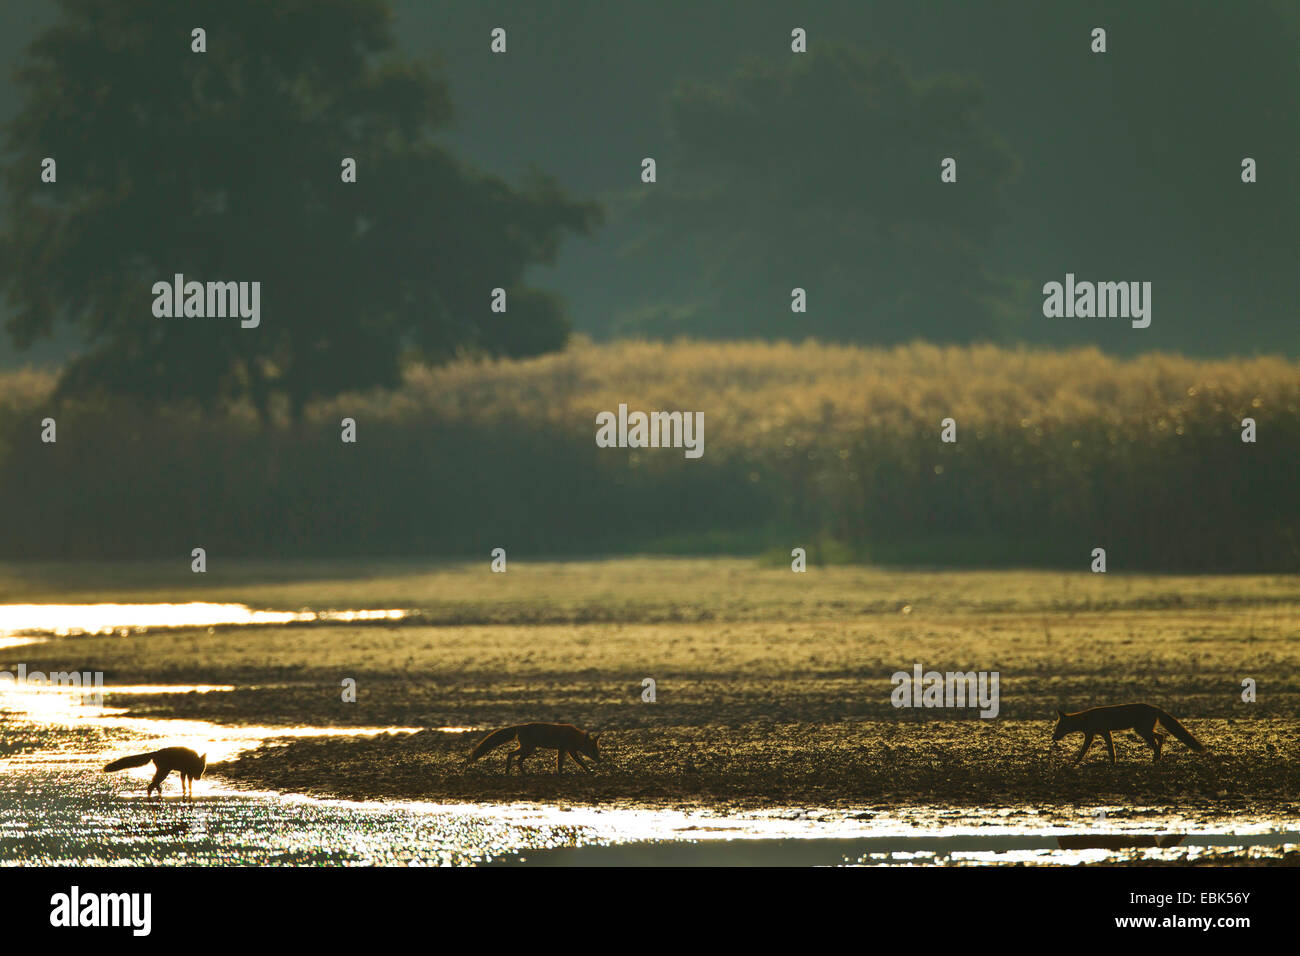 Rotfuchs (Vulpes Vulpes), leichte rote Füchse Morgen am Ufer eines Sees, Deutschland, Sachsen, Oberlausitz, obere Lausitz Heide- und Teichlandschaft Stockfoto